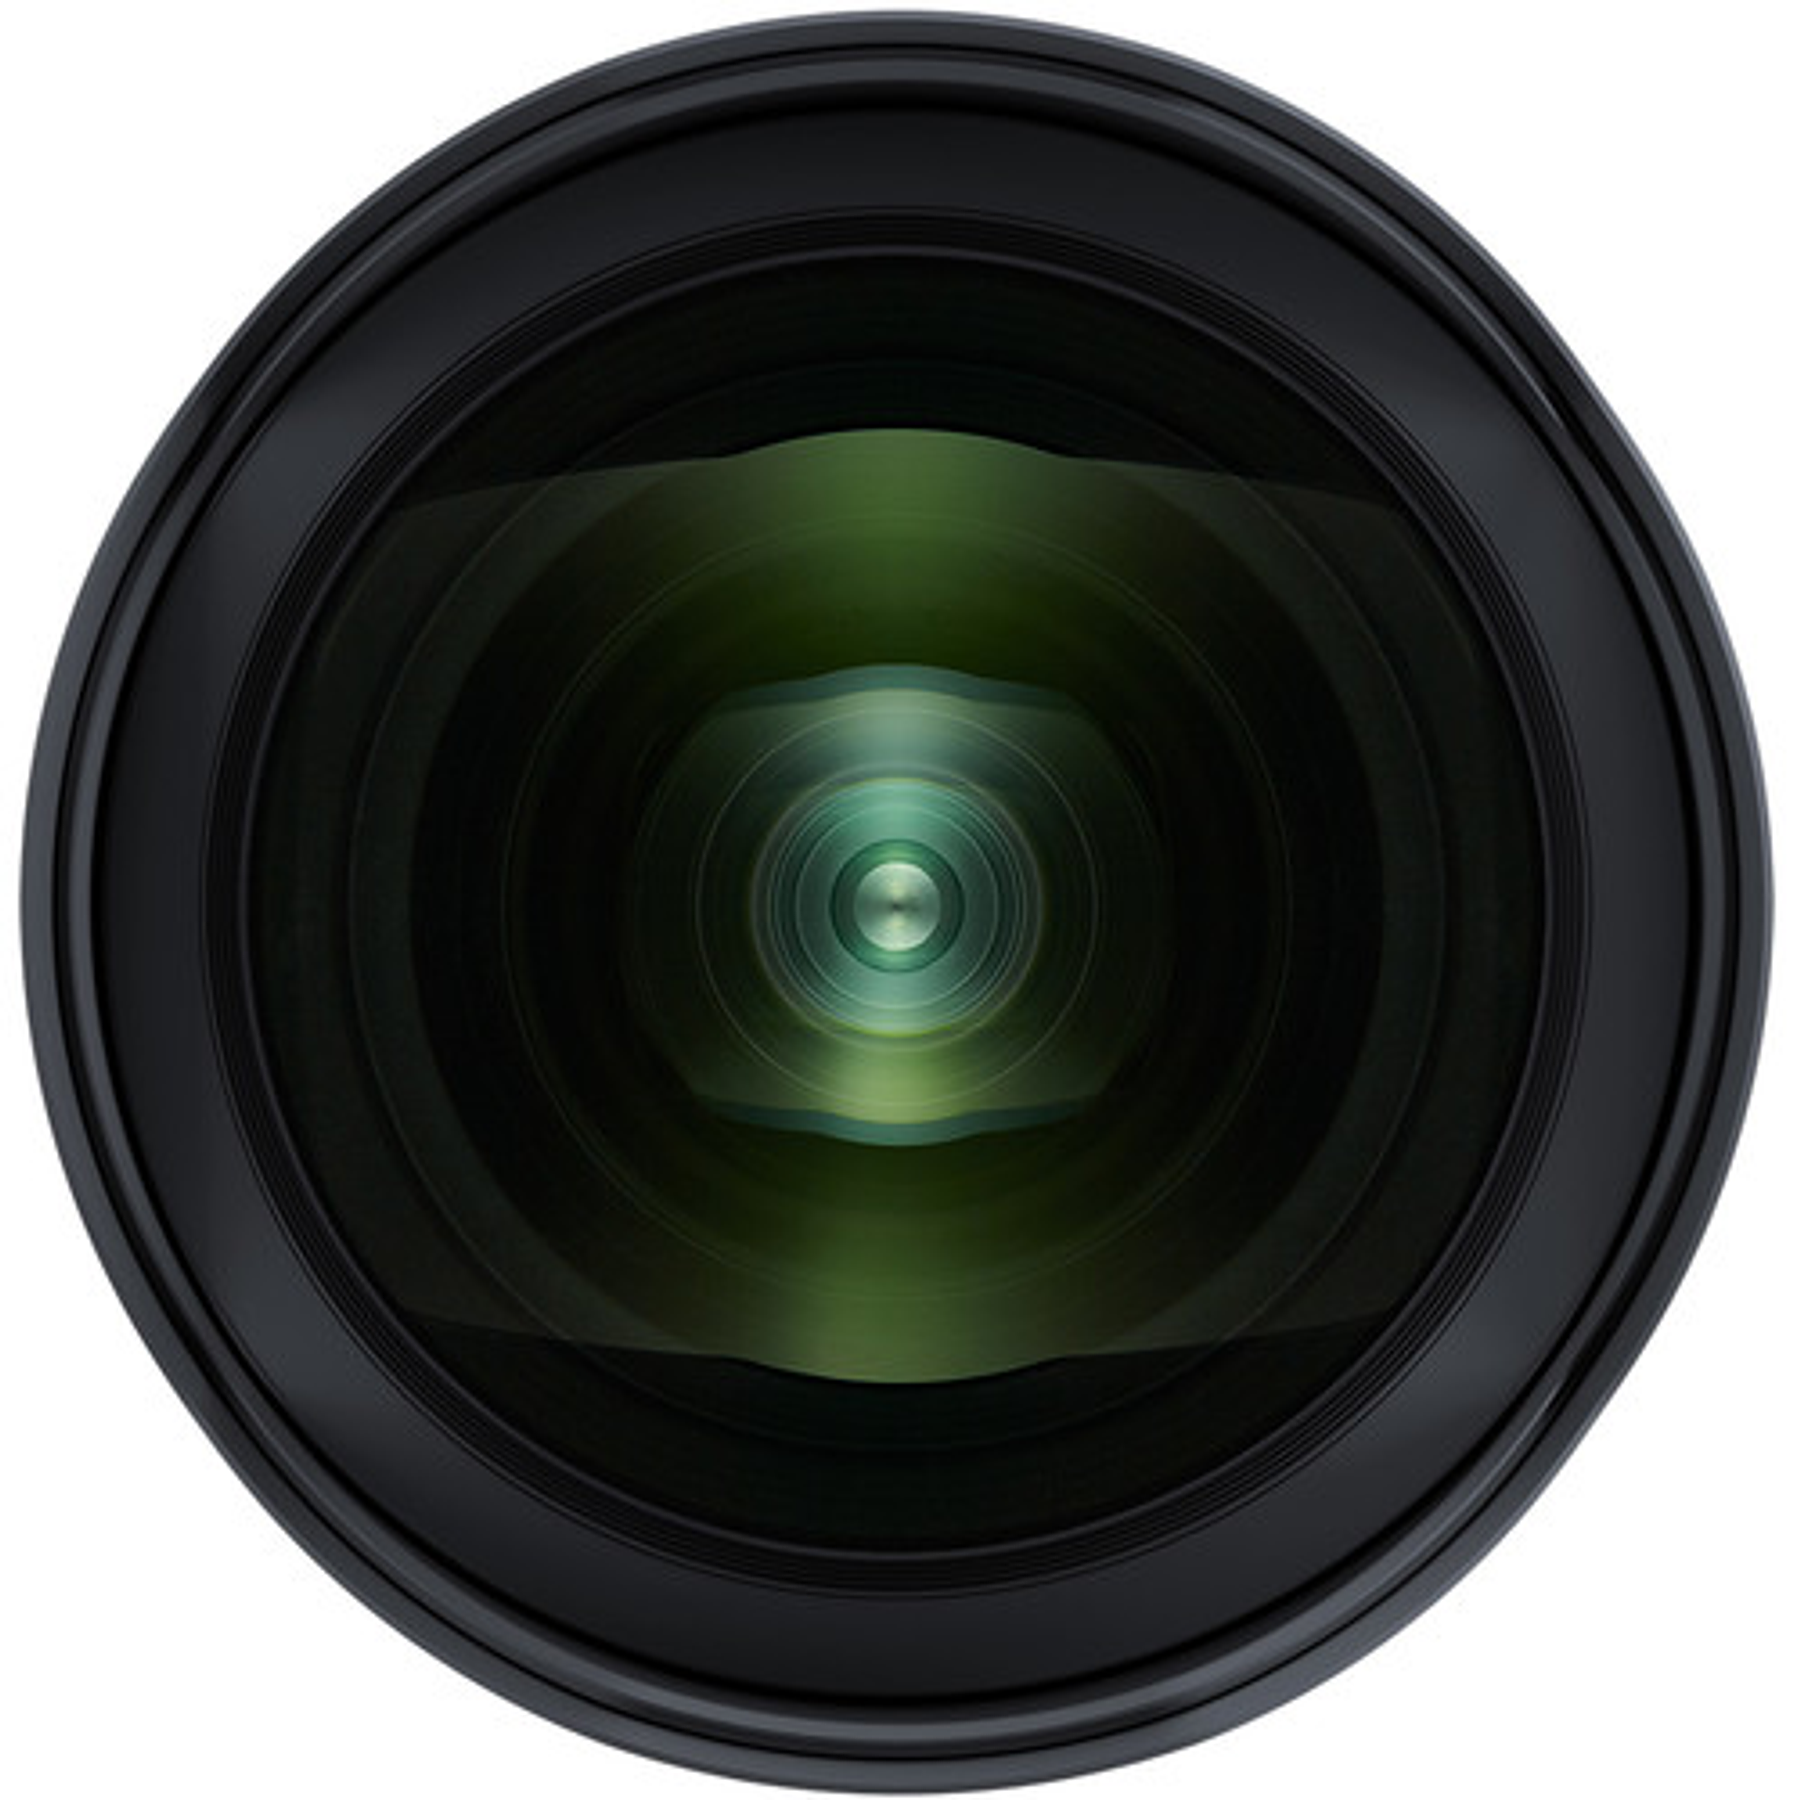 Tamron lente SP 15-30mm F/2.8 Di VC USD G2 para Canon/Nikon